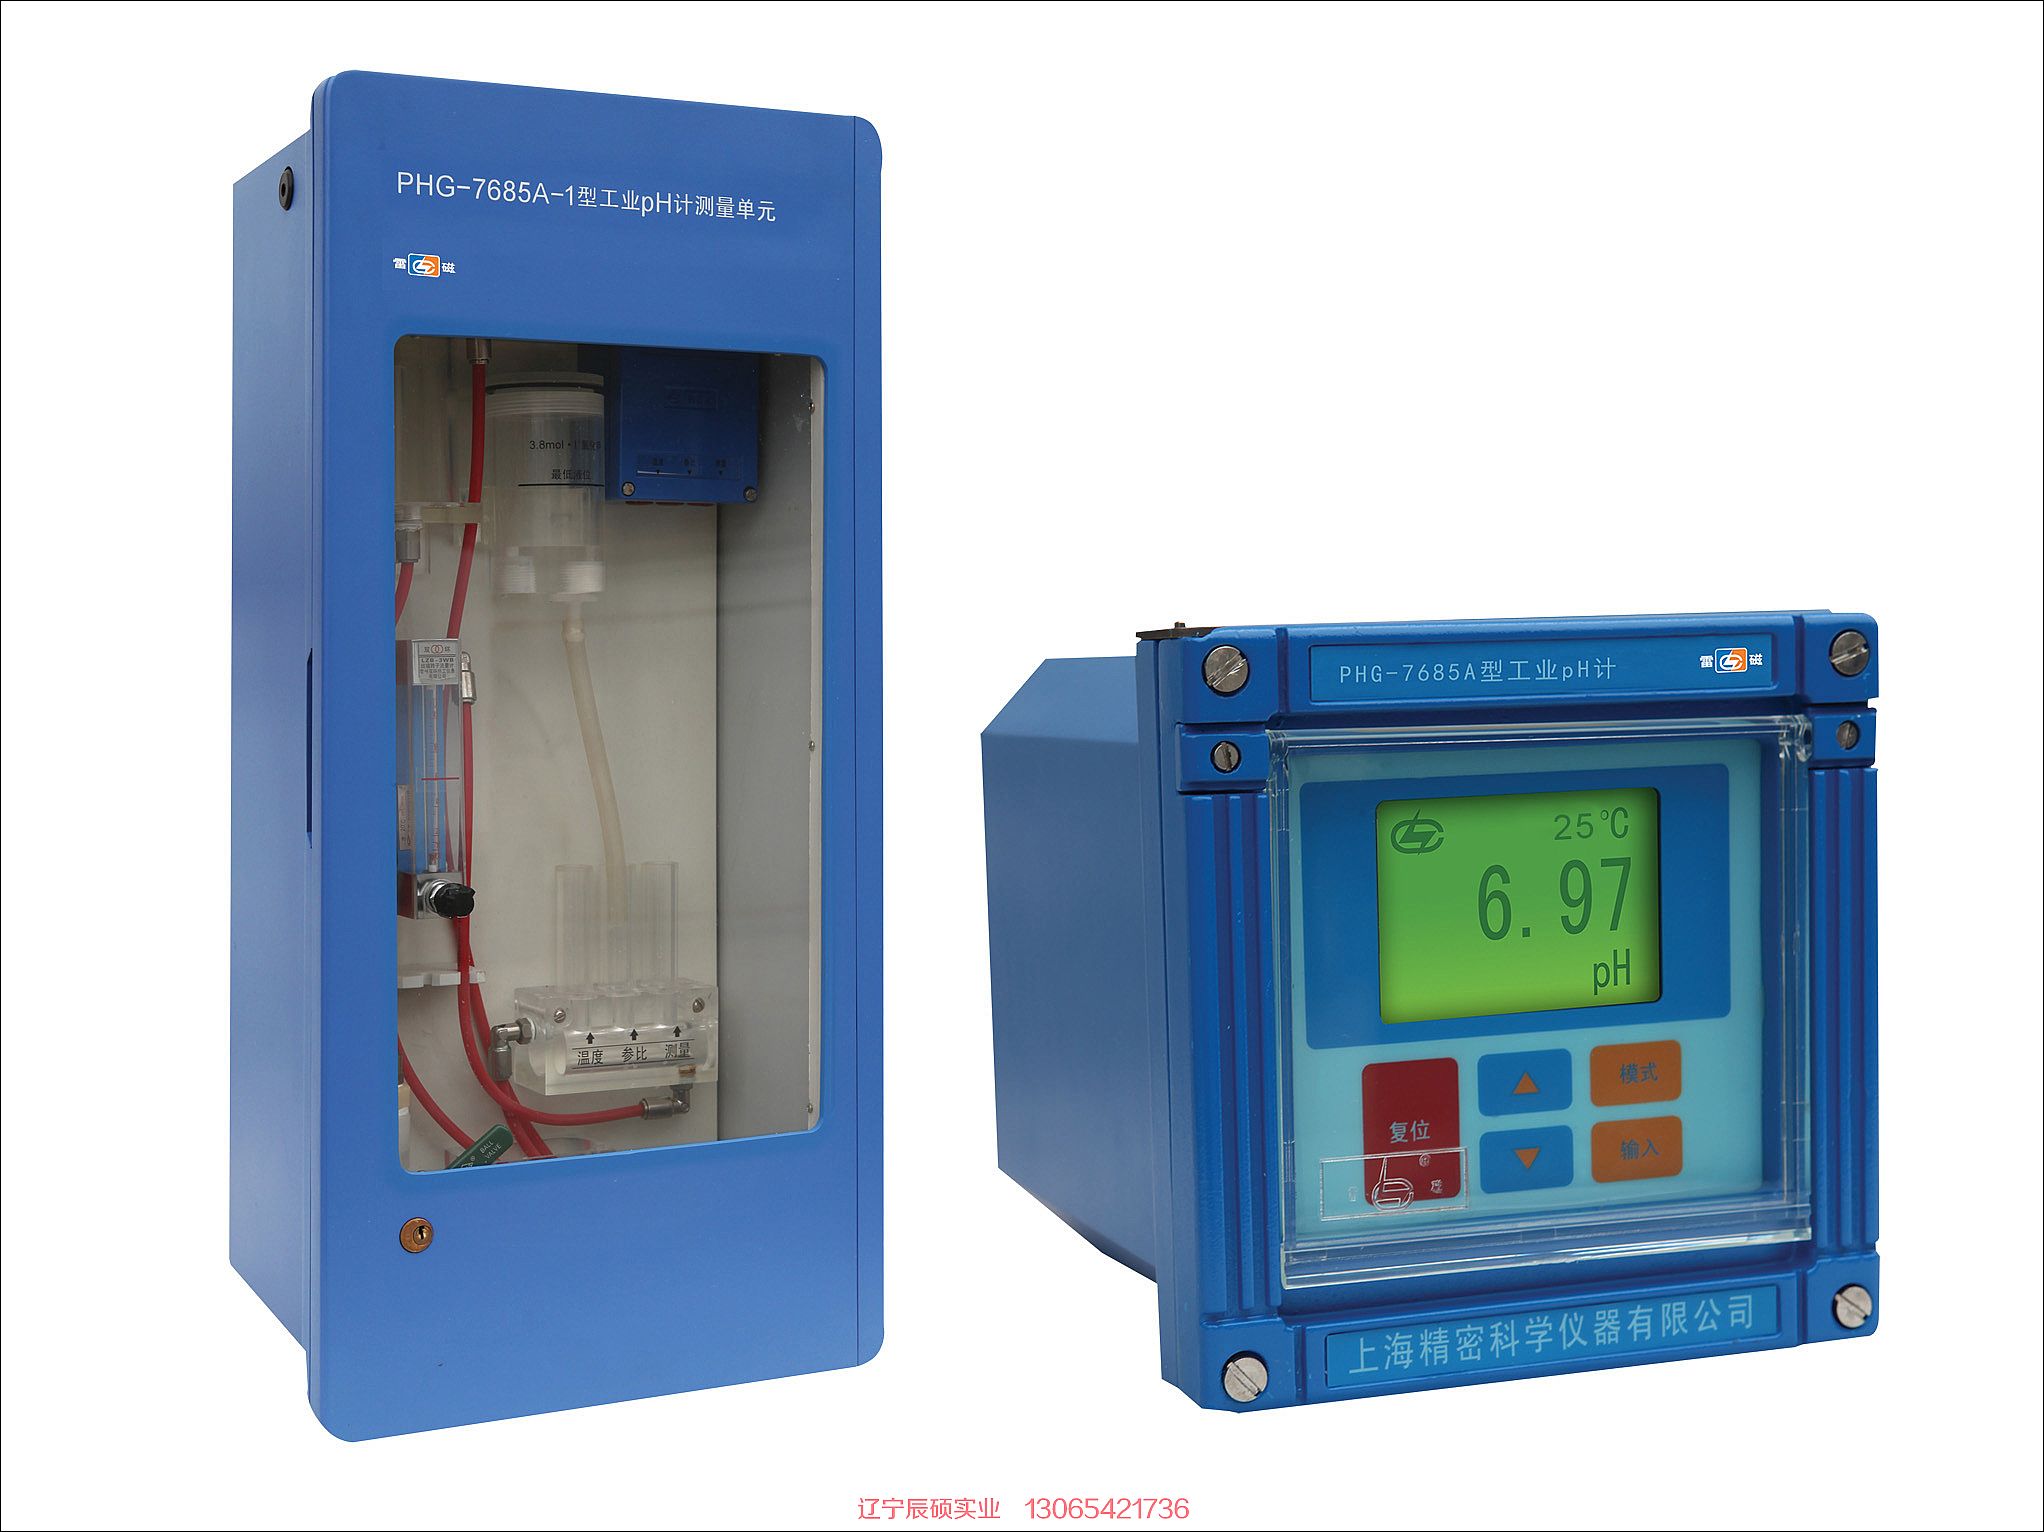 雷磁PHG-7685A型工业pH计在线监测仪